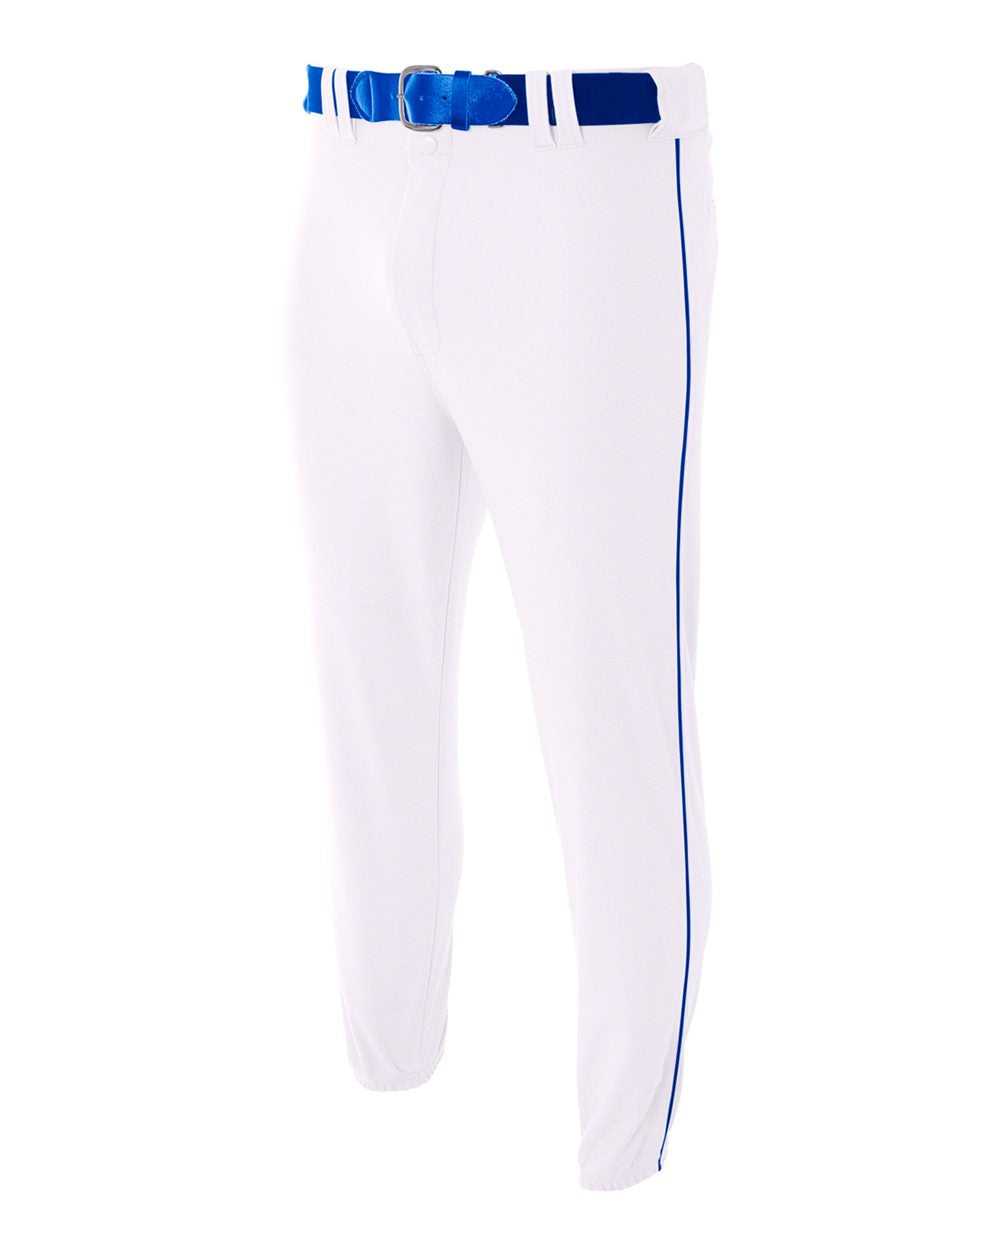 A4 N6178 Pro Style Elastic Bottom Baseball Pant - White Royal - HIT a Double